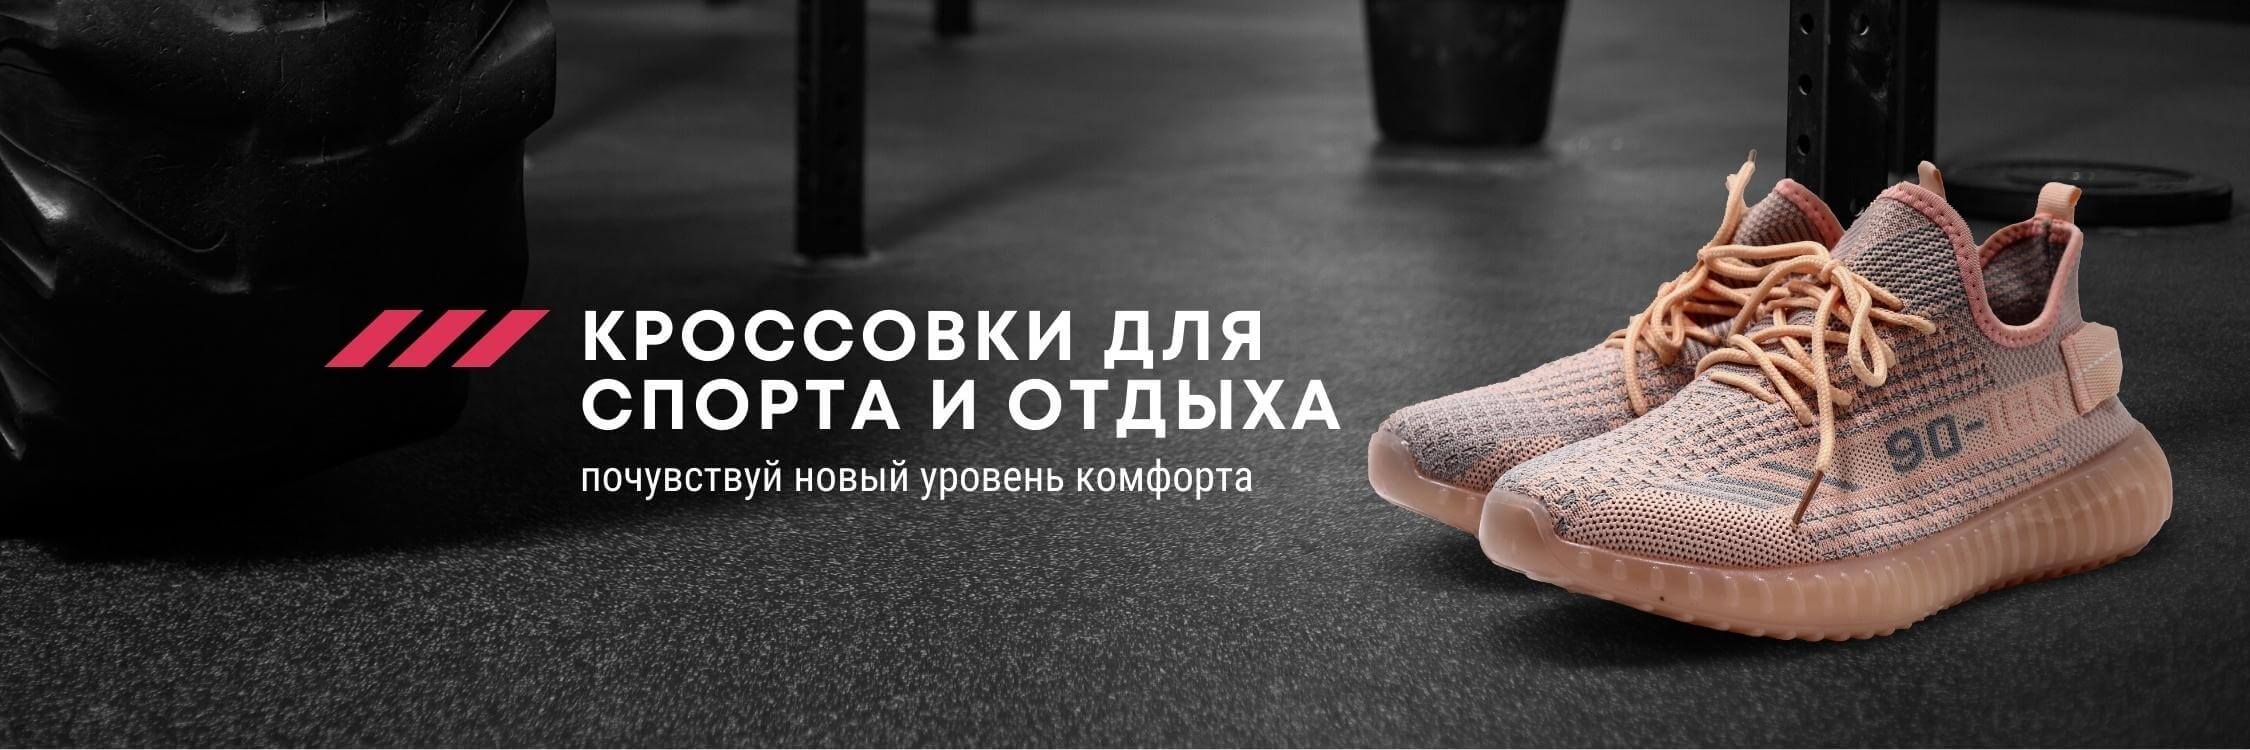 Интернет-магазин обуви Под каблуком в Москве - каталог женской и мужской обуви, новинки.